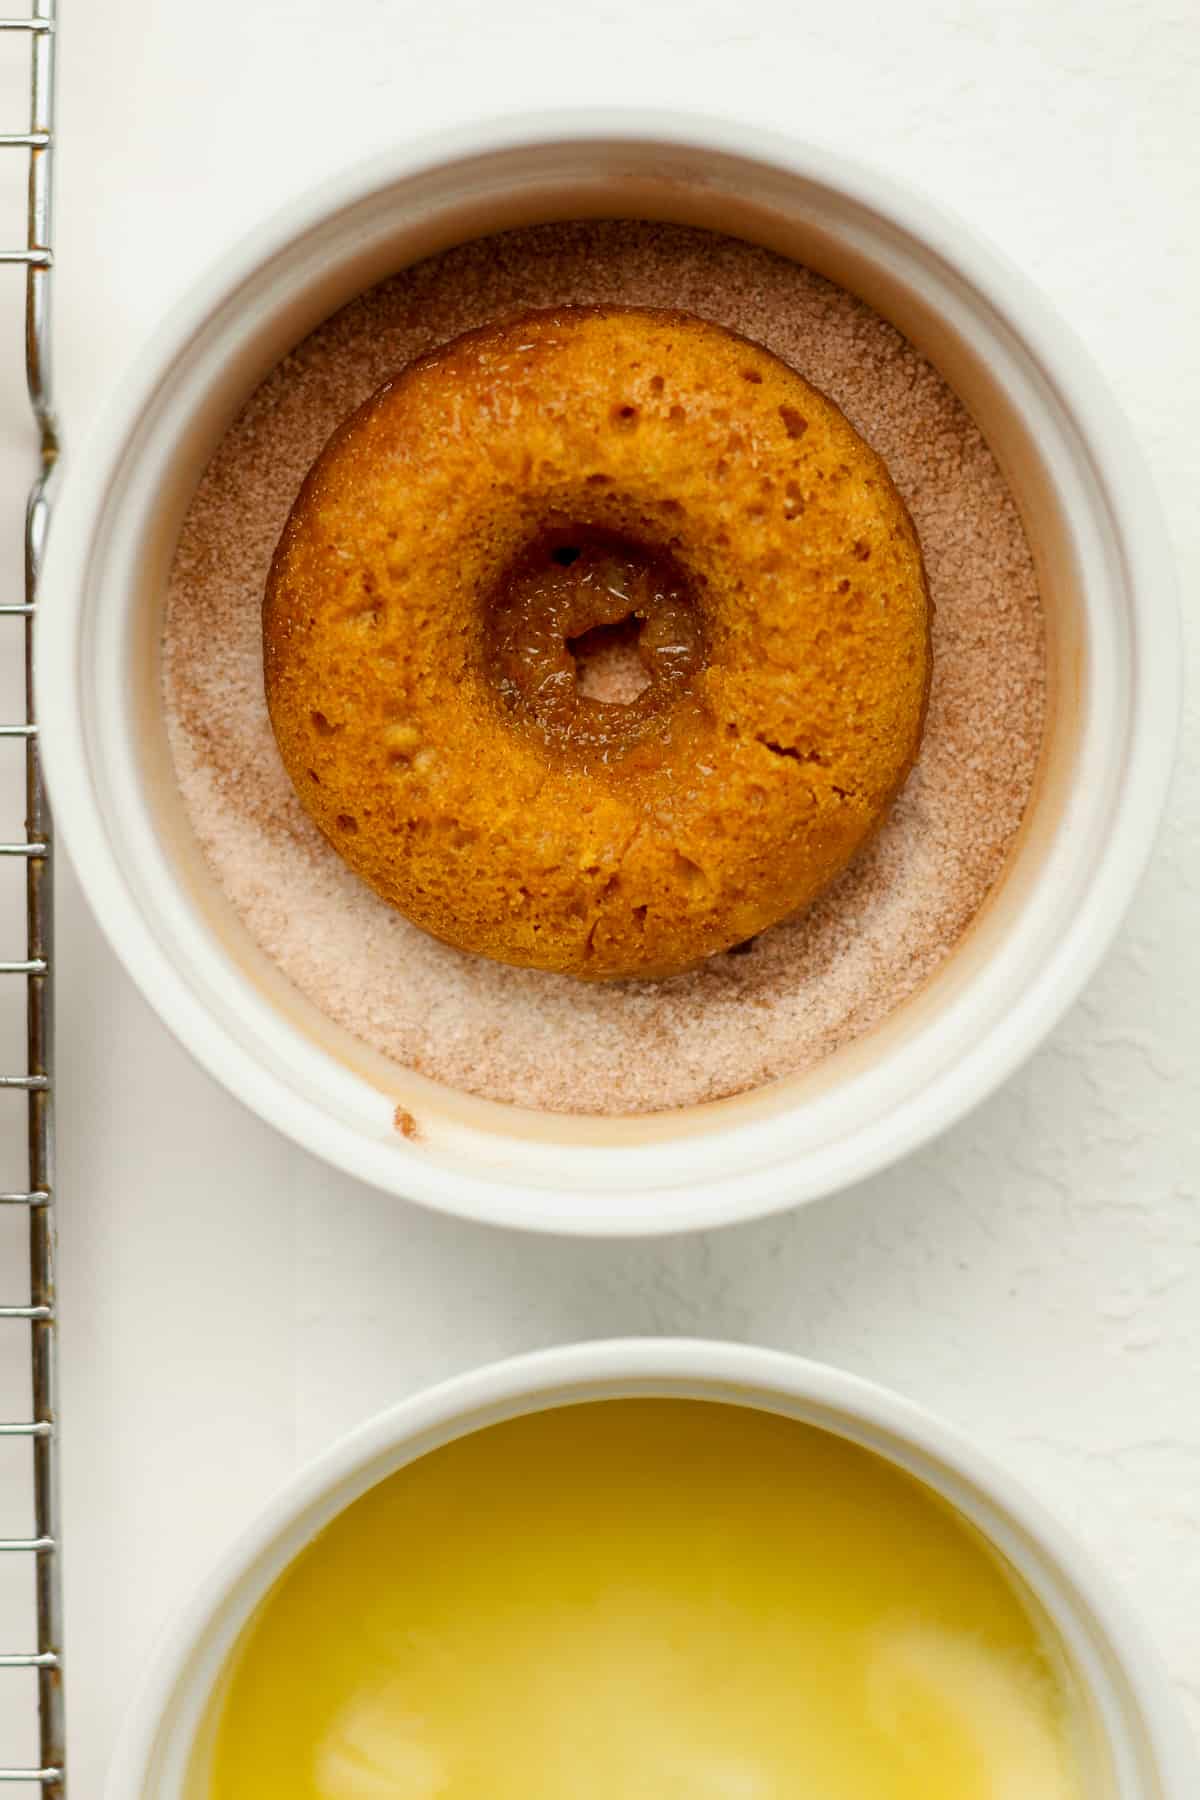 A pumpkin donut in a bowl of cinnamon sugar.